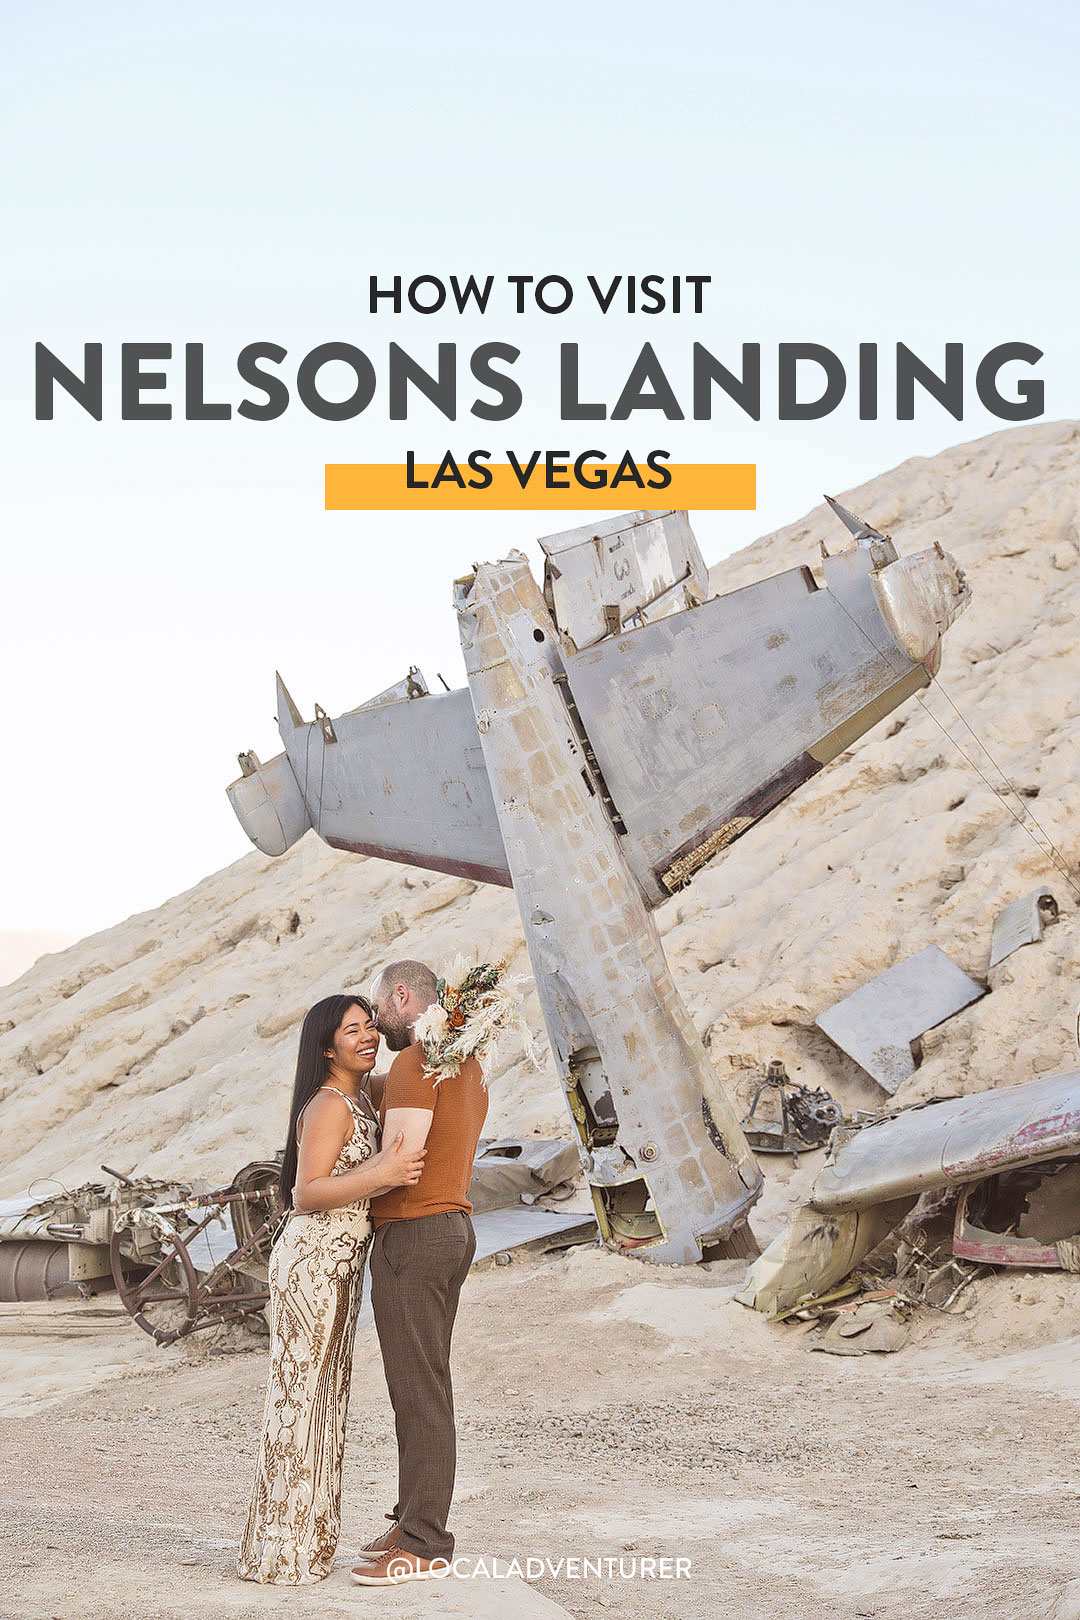 Nelsons Landing